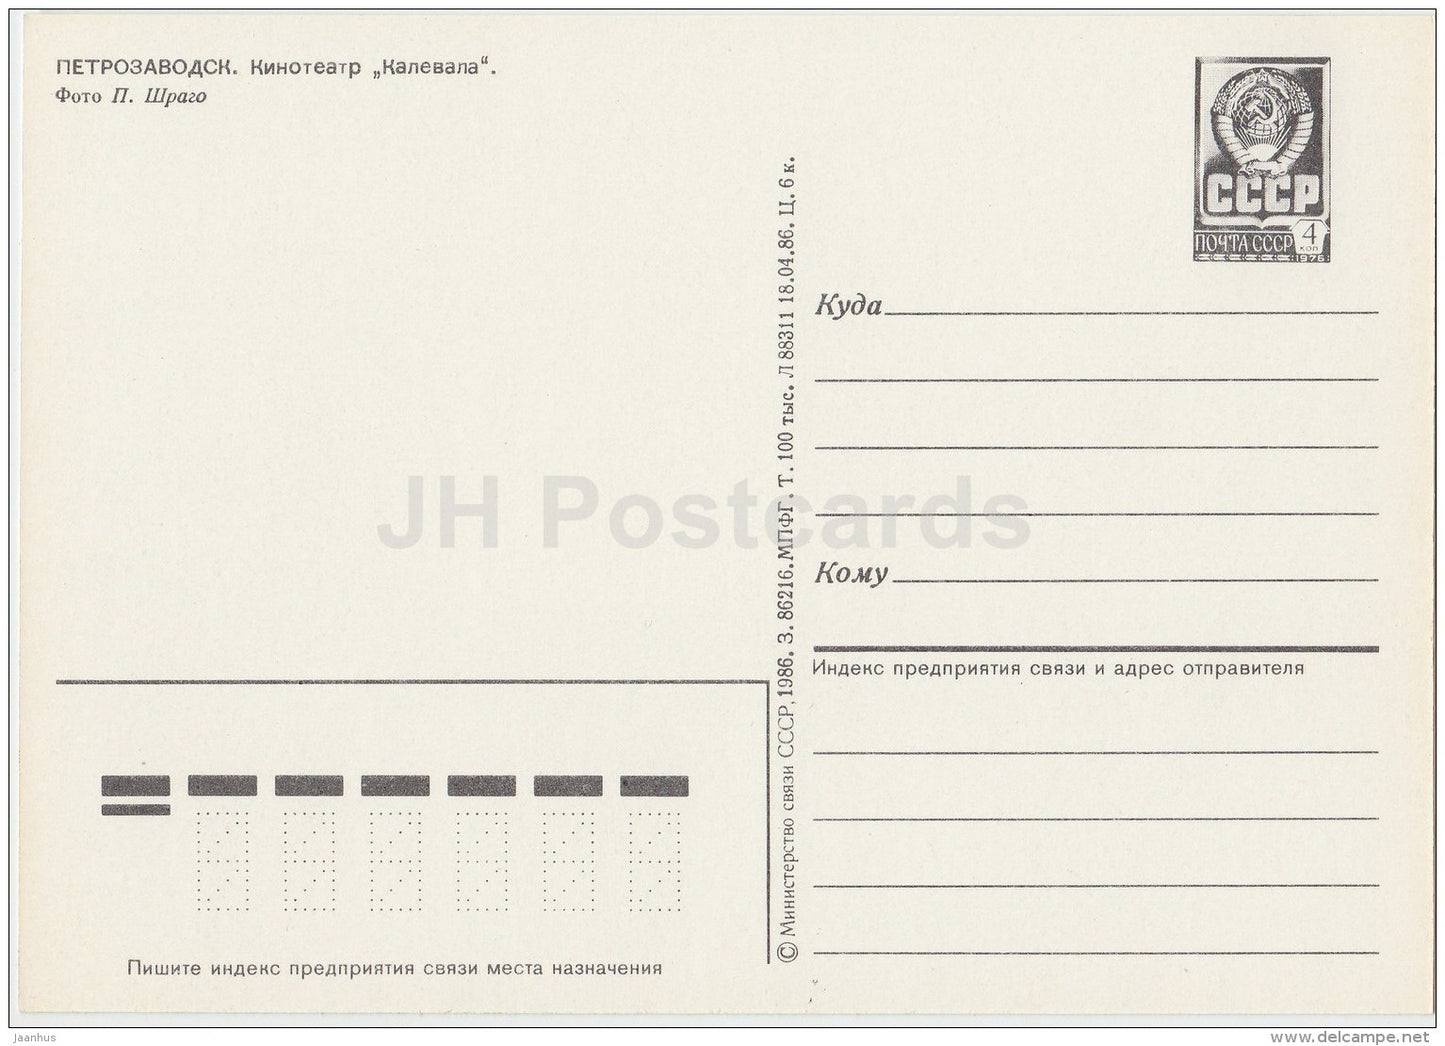 cinema theatre Kalevala - Petrozavodsk - postal stationery - 1986 - Russia USSR - unused - JH Postcards